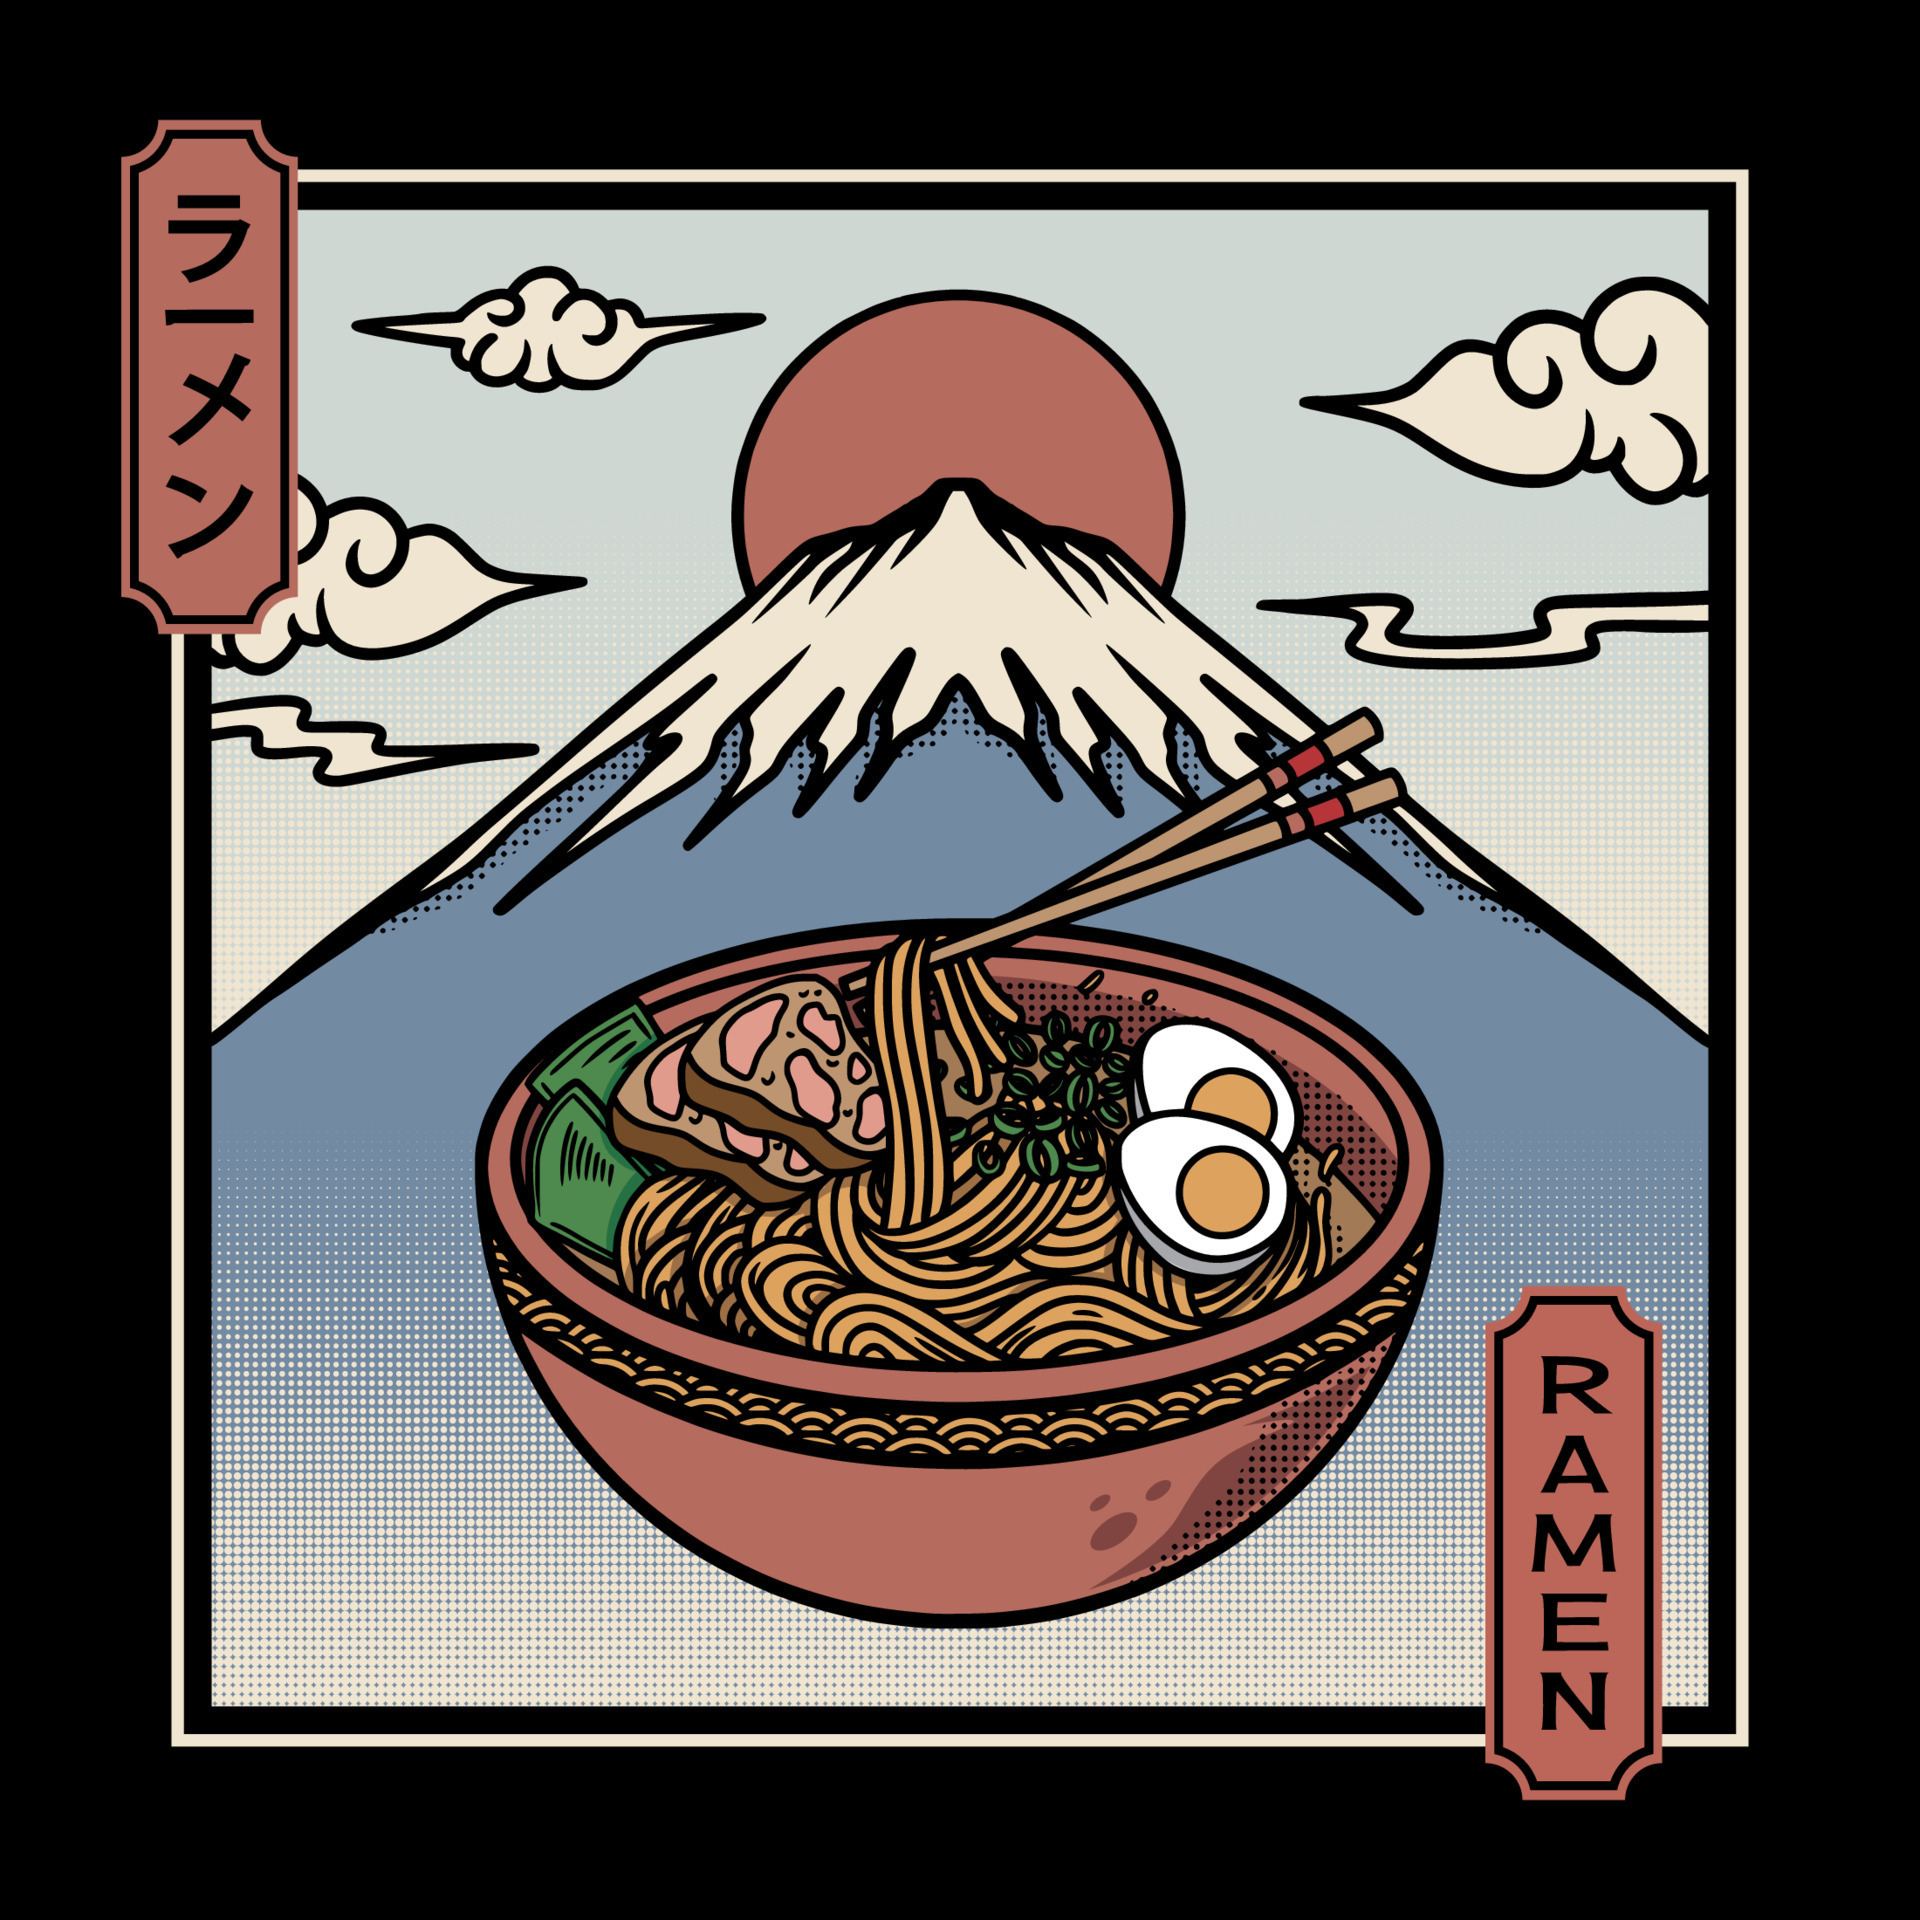 Cuenco De Ejemplo Japonés De Los Ramen Stock de ilustración